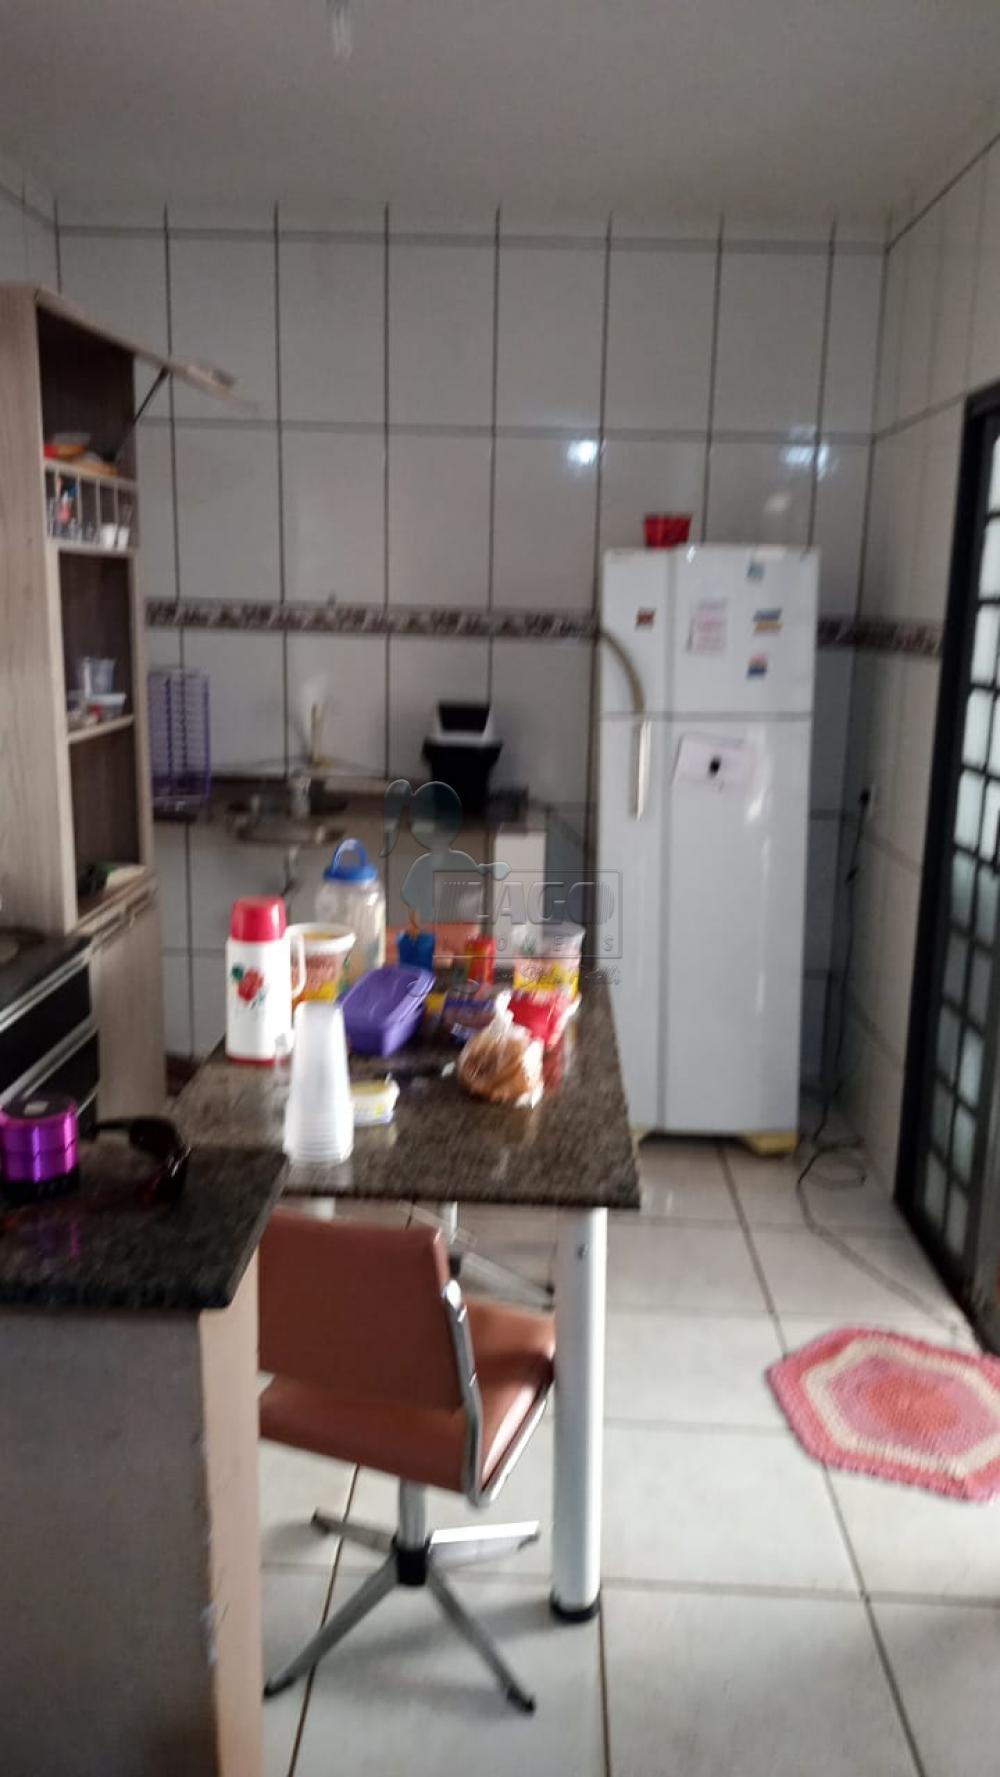 Alugar Casas / Padrão em Ribeirão Preto R$ 600,00 - Foto 12